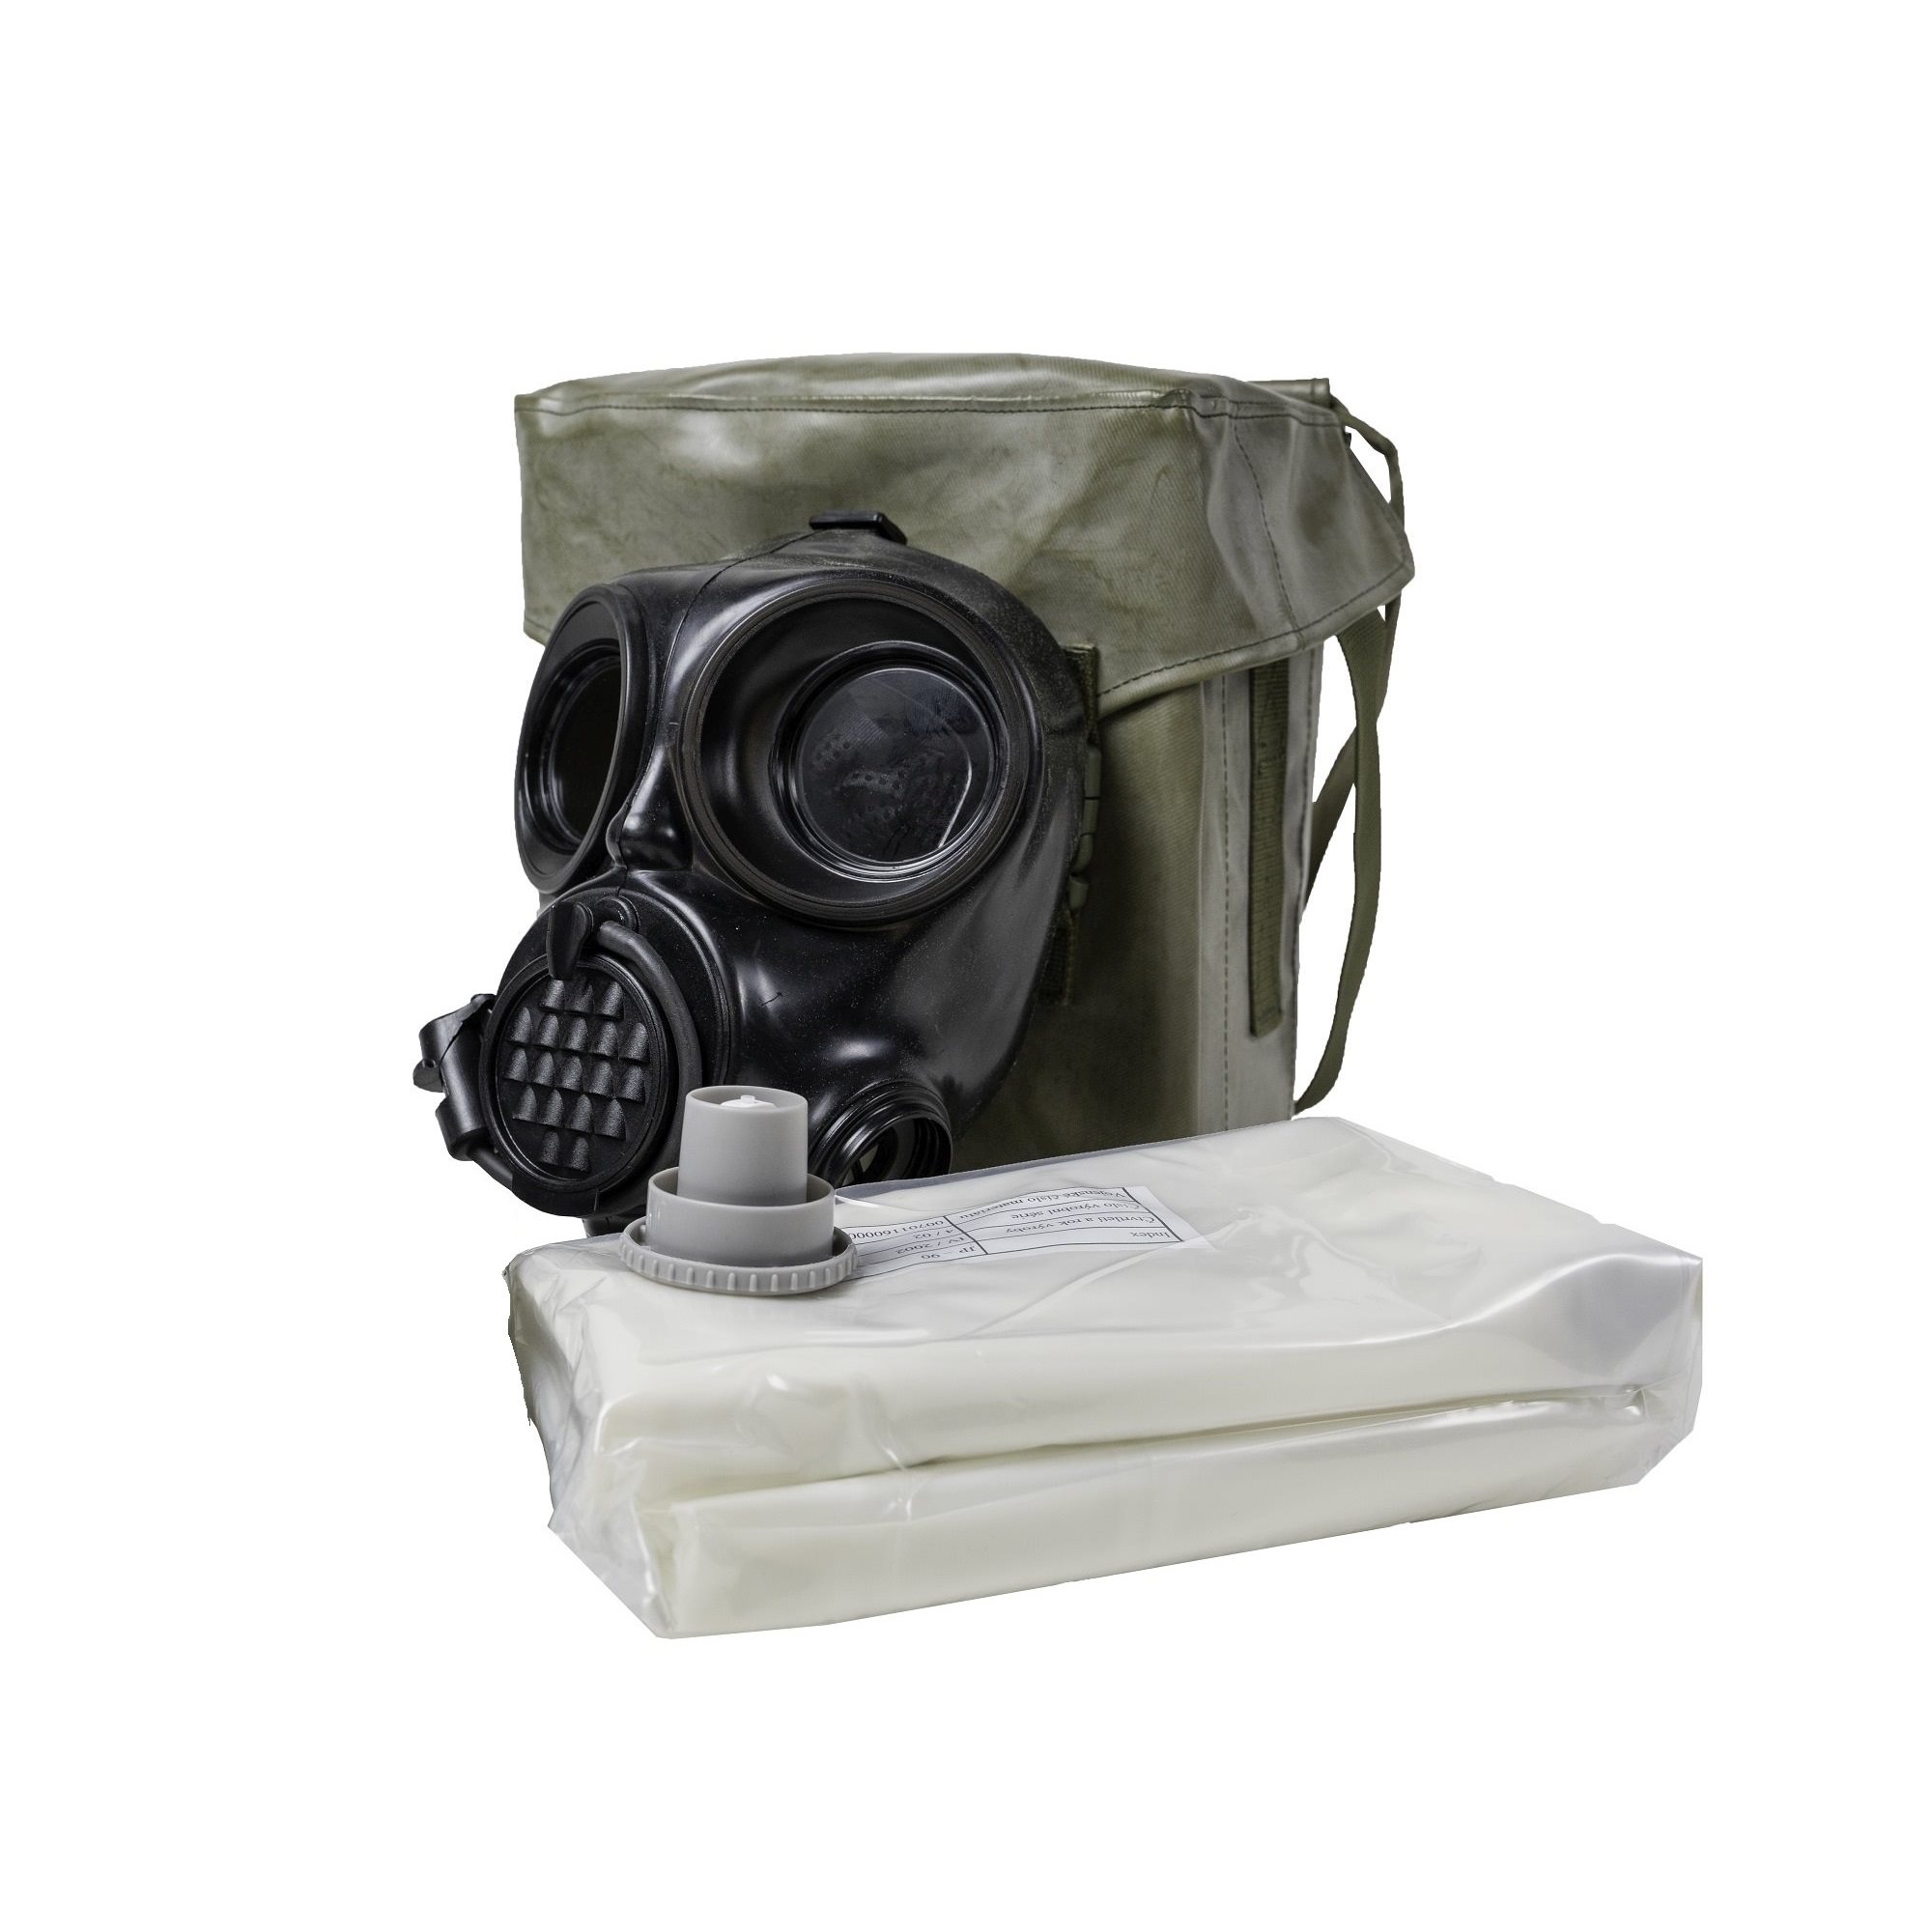 Maska plynová OM-90 + oblek JP-90 v použité brašnì - zvìtšit obrázek